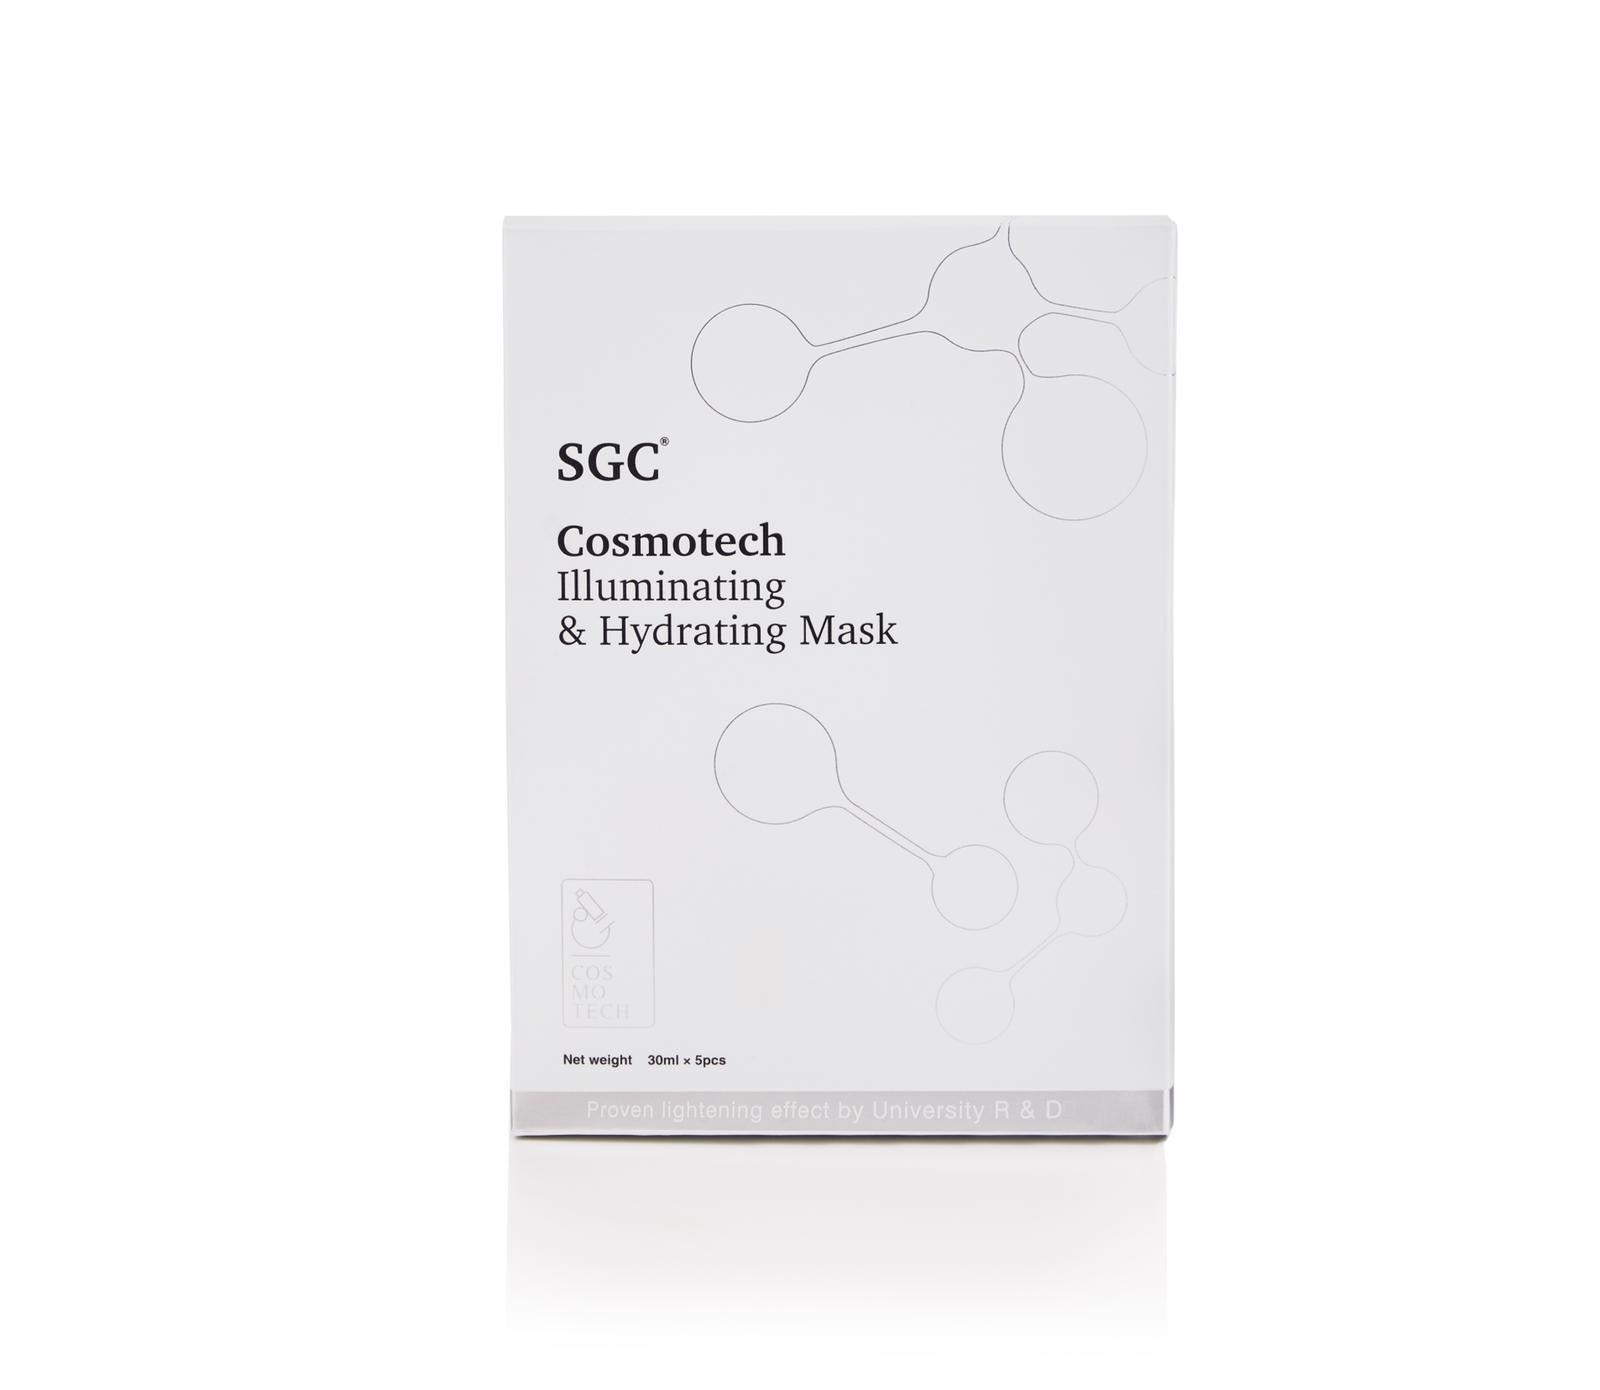 SGC Cosmotech Illuminating and Hydrating Mask (10pcs) - SGCCOSMOTECH